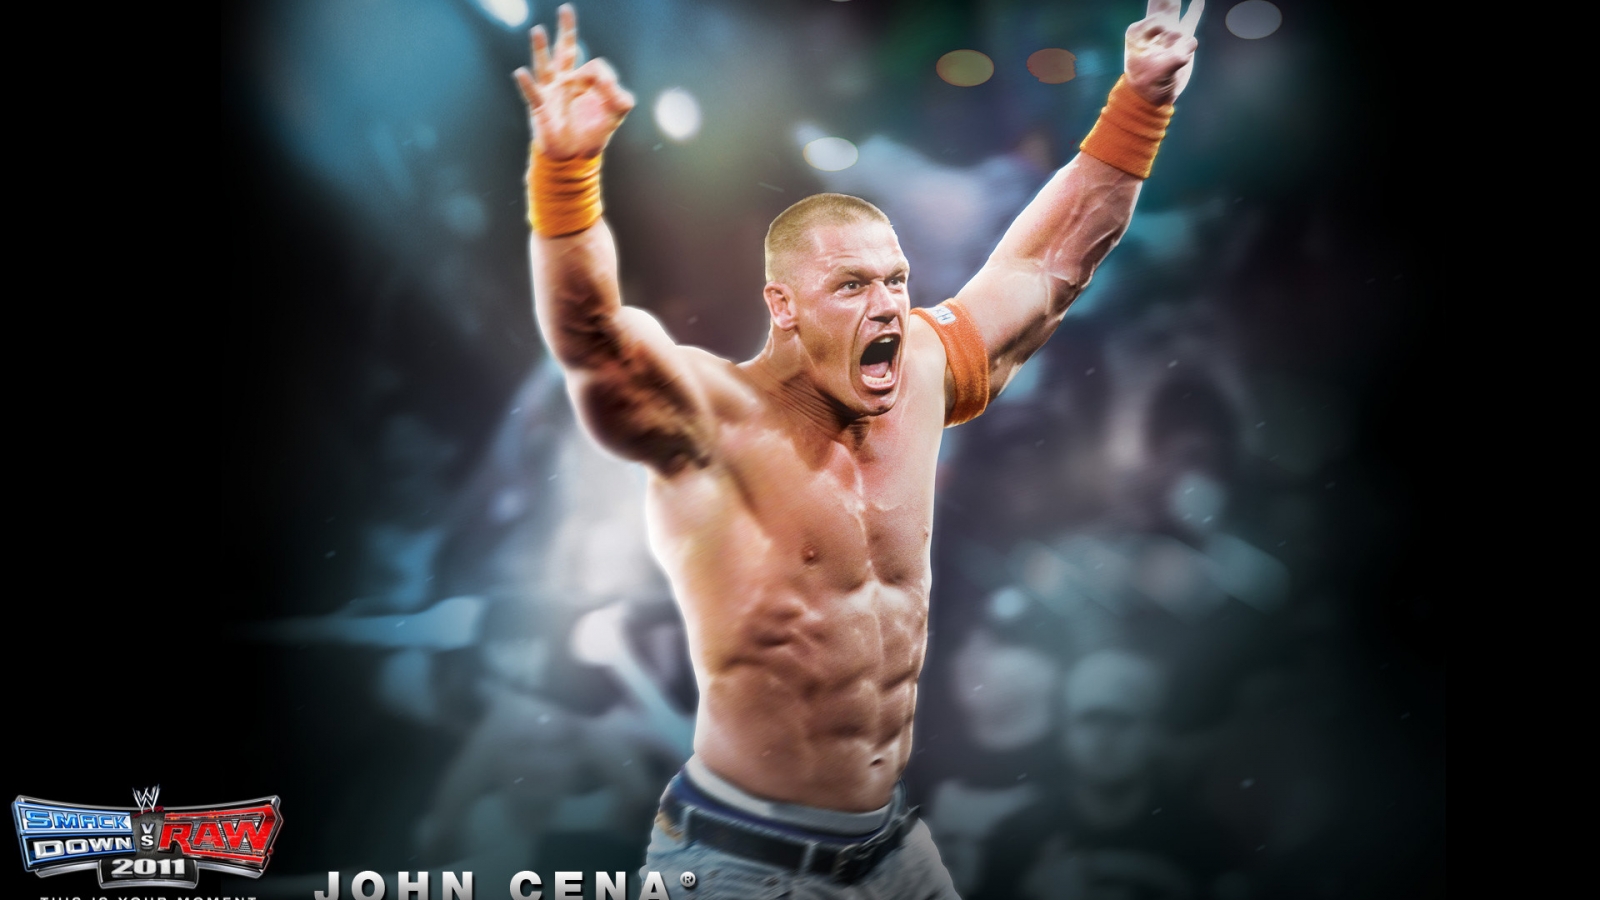 John Cena for 1600 x 900 HDTV resolution